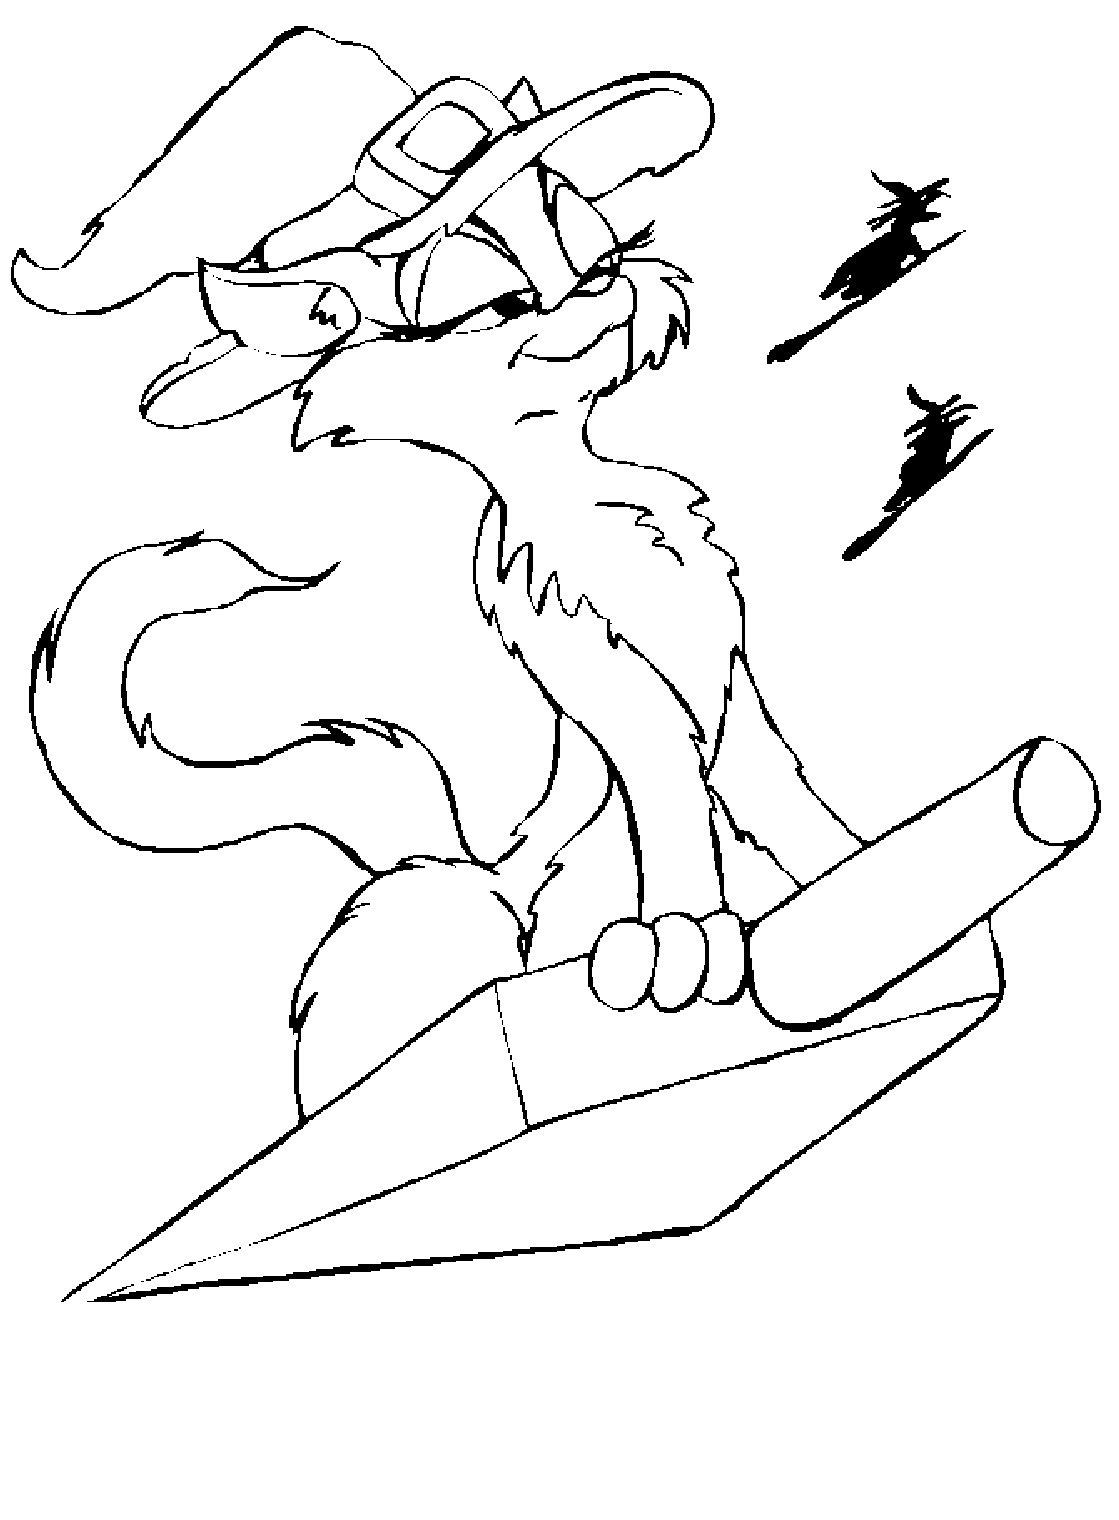 Раскраска с изображением кошки ведьмочки, летящей на совке (ведьмочка)